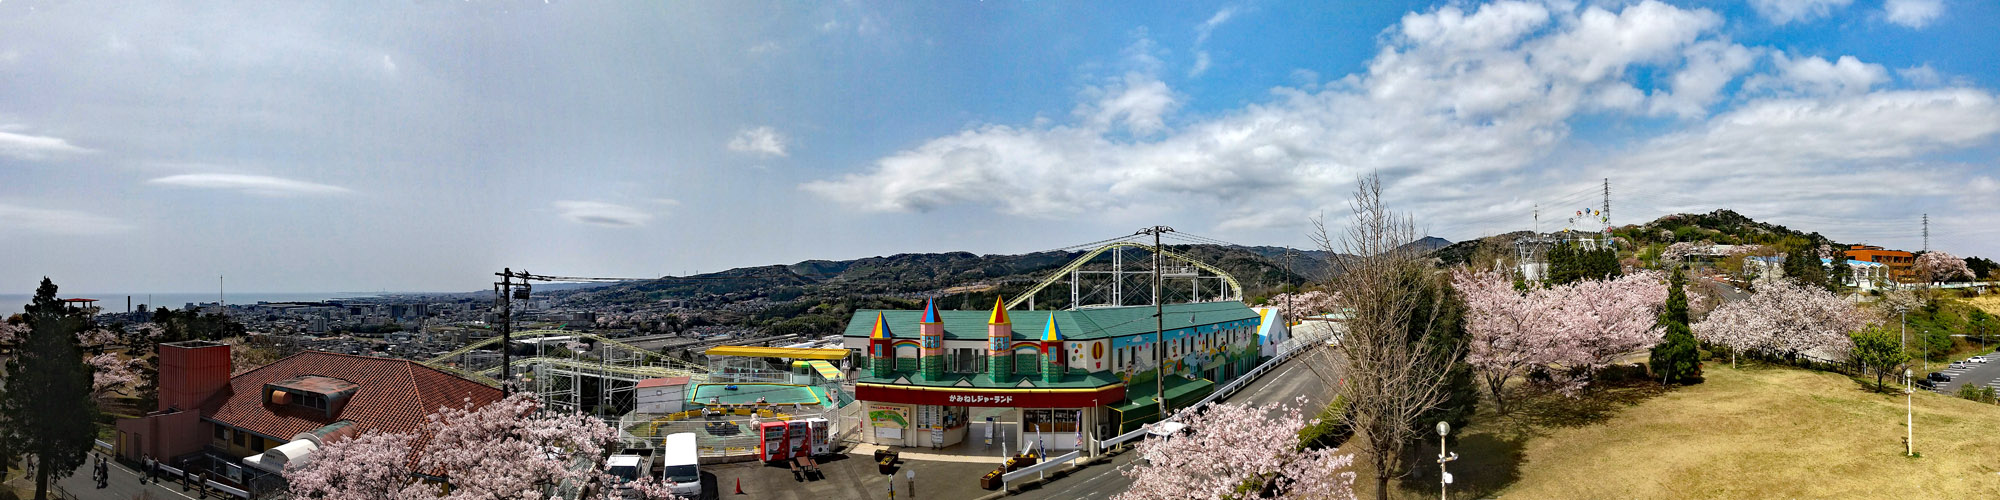 パノラマ公園展望台下のソメイヨシノ桜